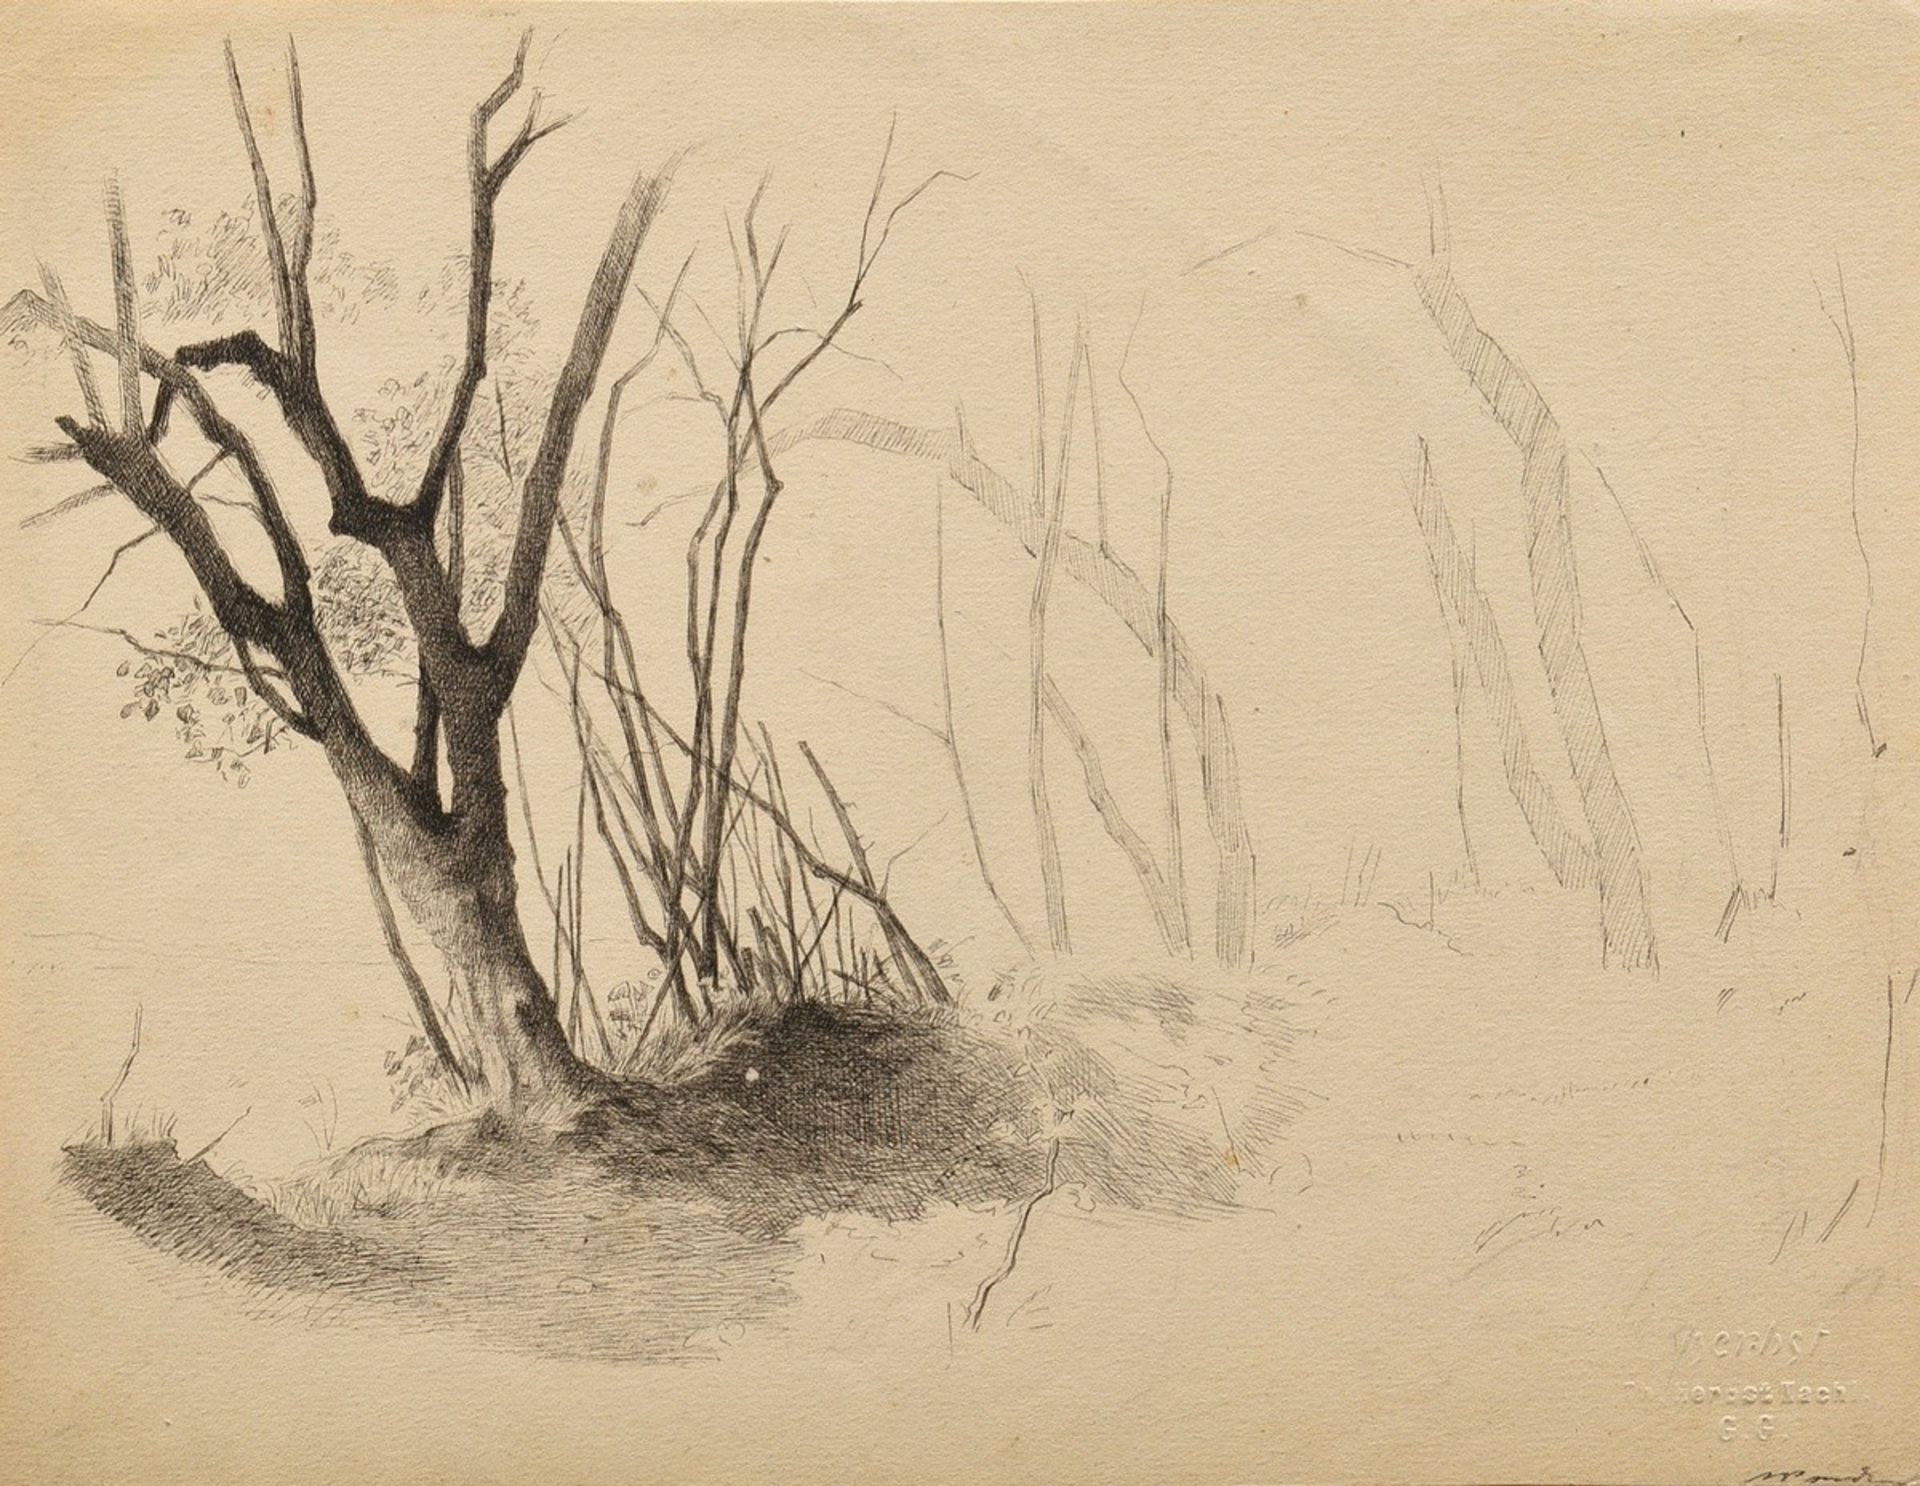 Herbst, Thomas (1848-1915) "Baum" verso "Gesicht", Federstudie, Nachlassprägestempel, im Passeparto